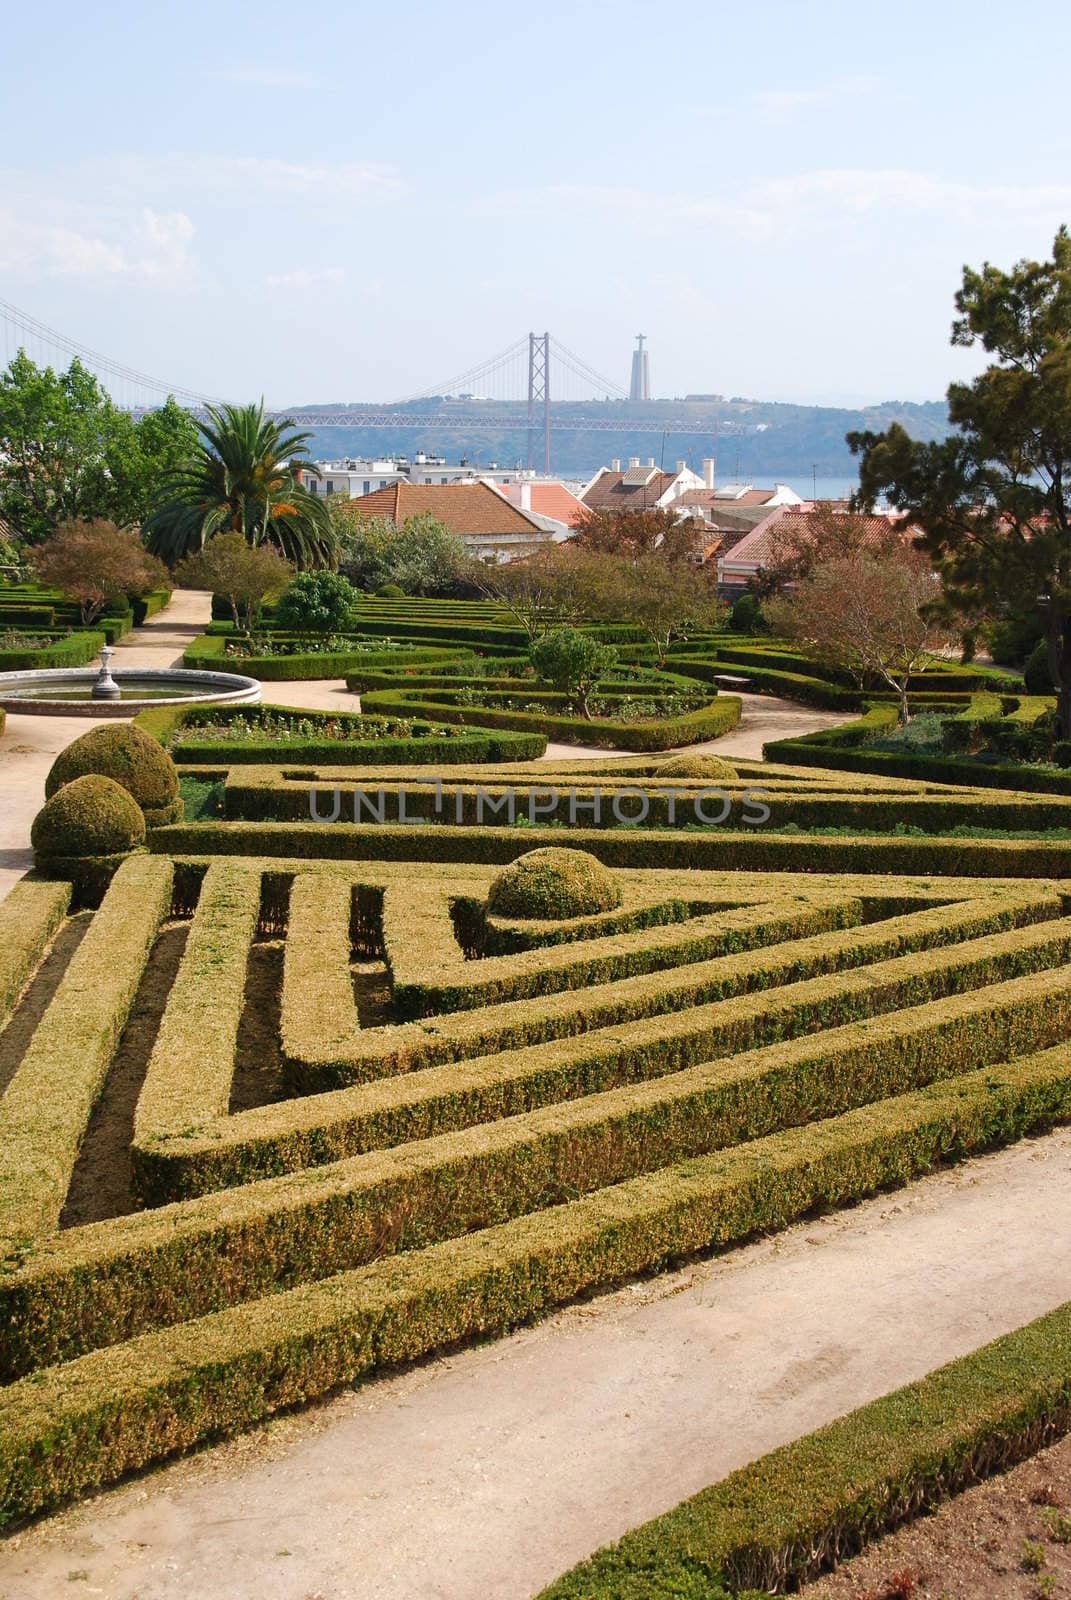 Enchanted Ajuda garden with April 25th bridge in Lisbon, Portugal by luissantos84